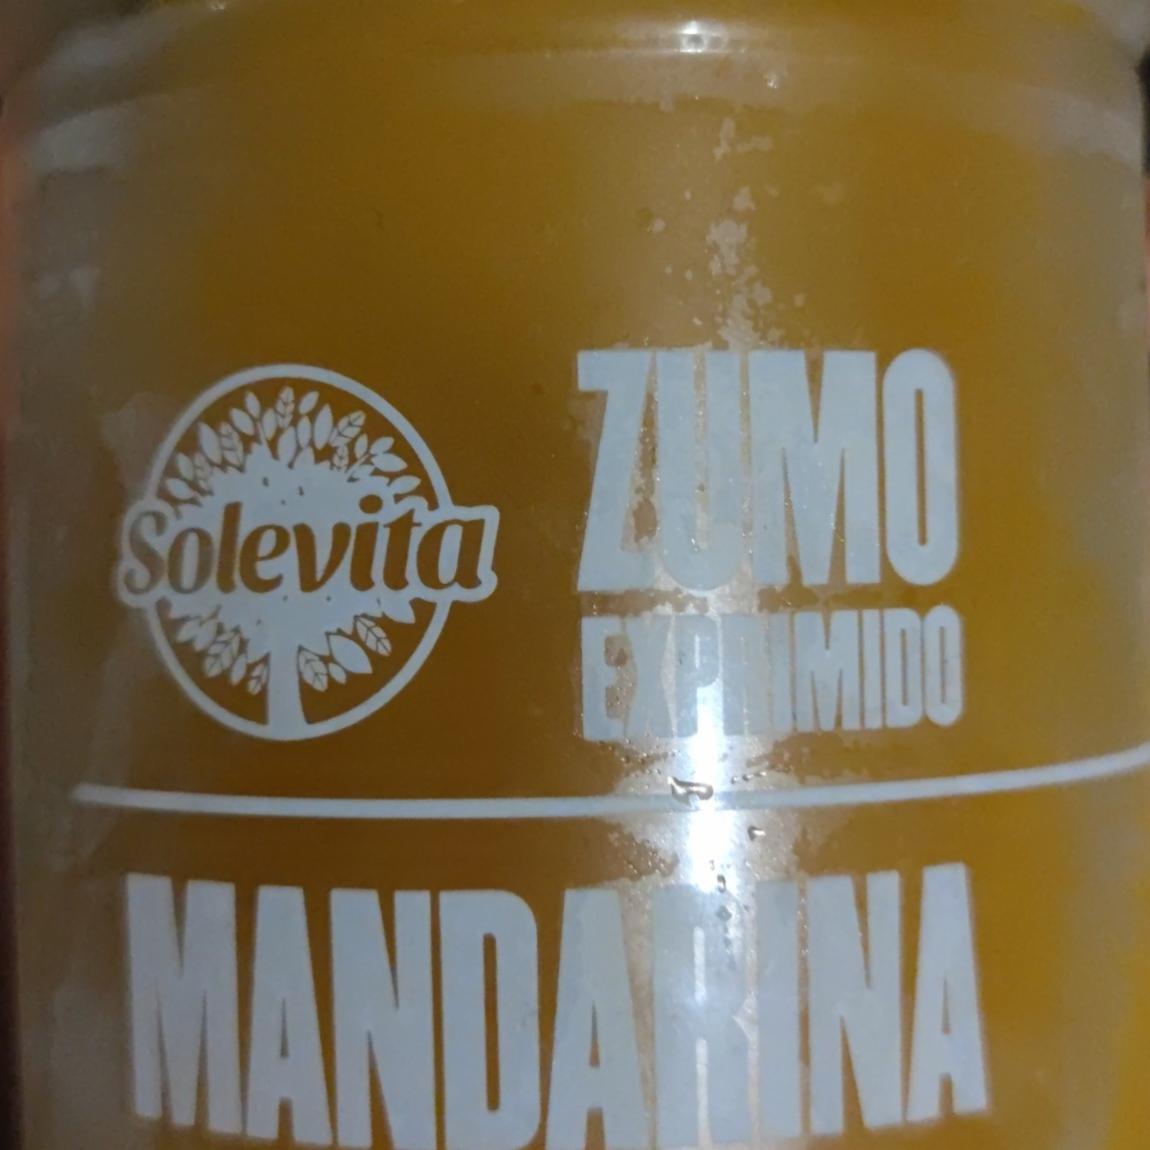 Fotografie - Zumo exprimido Mandarina Solevita